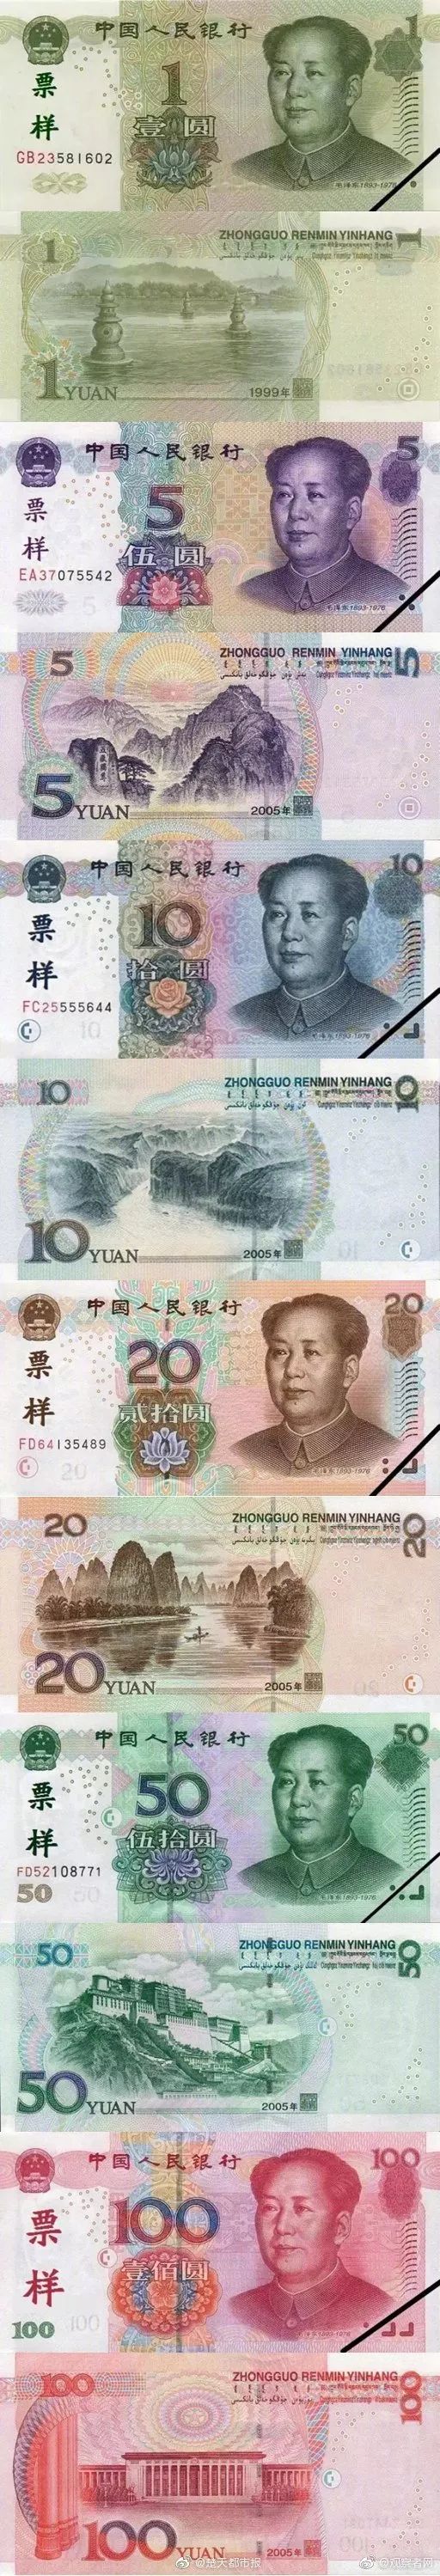 先睹为快!新版第五套人民币来了!5元纸币和泰山"五岳独尊"图案没了!